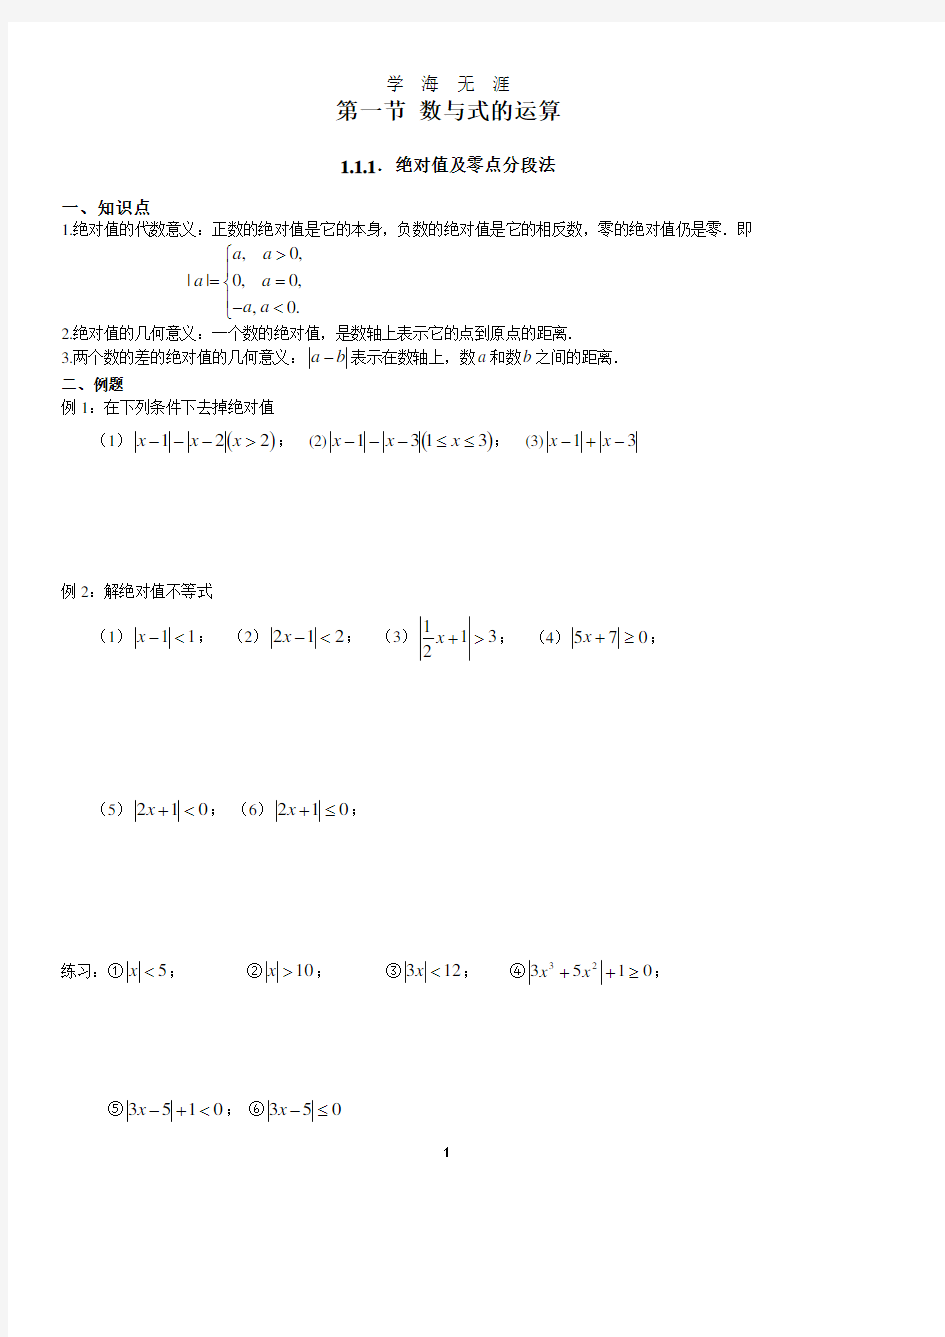 初高中衔接教材(自己修订版)(2020年8月整理).pdf